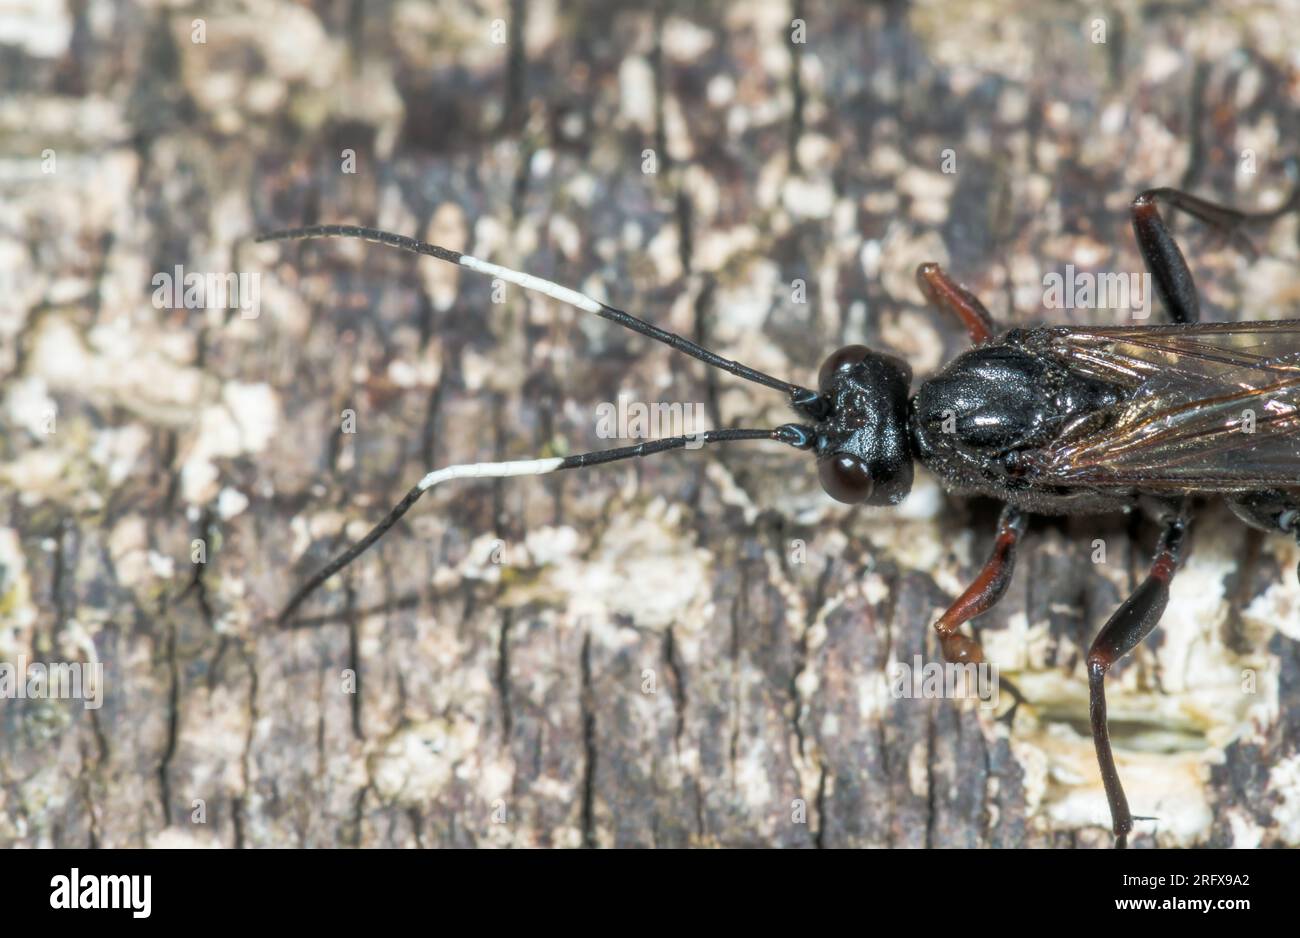 Bicoloured Antennae of Cryptine Ichneumon Darwin Wasp (Echthrus reluctator). Ichneumonidae. Sussex, UK Stock Photo